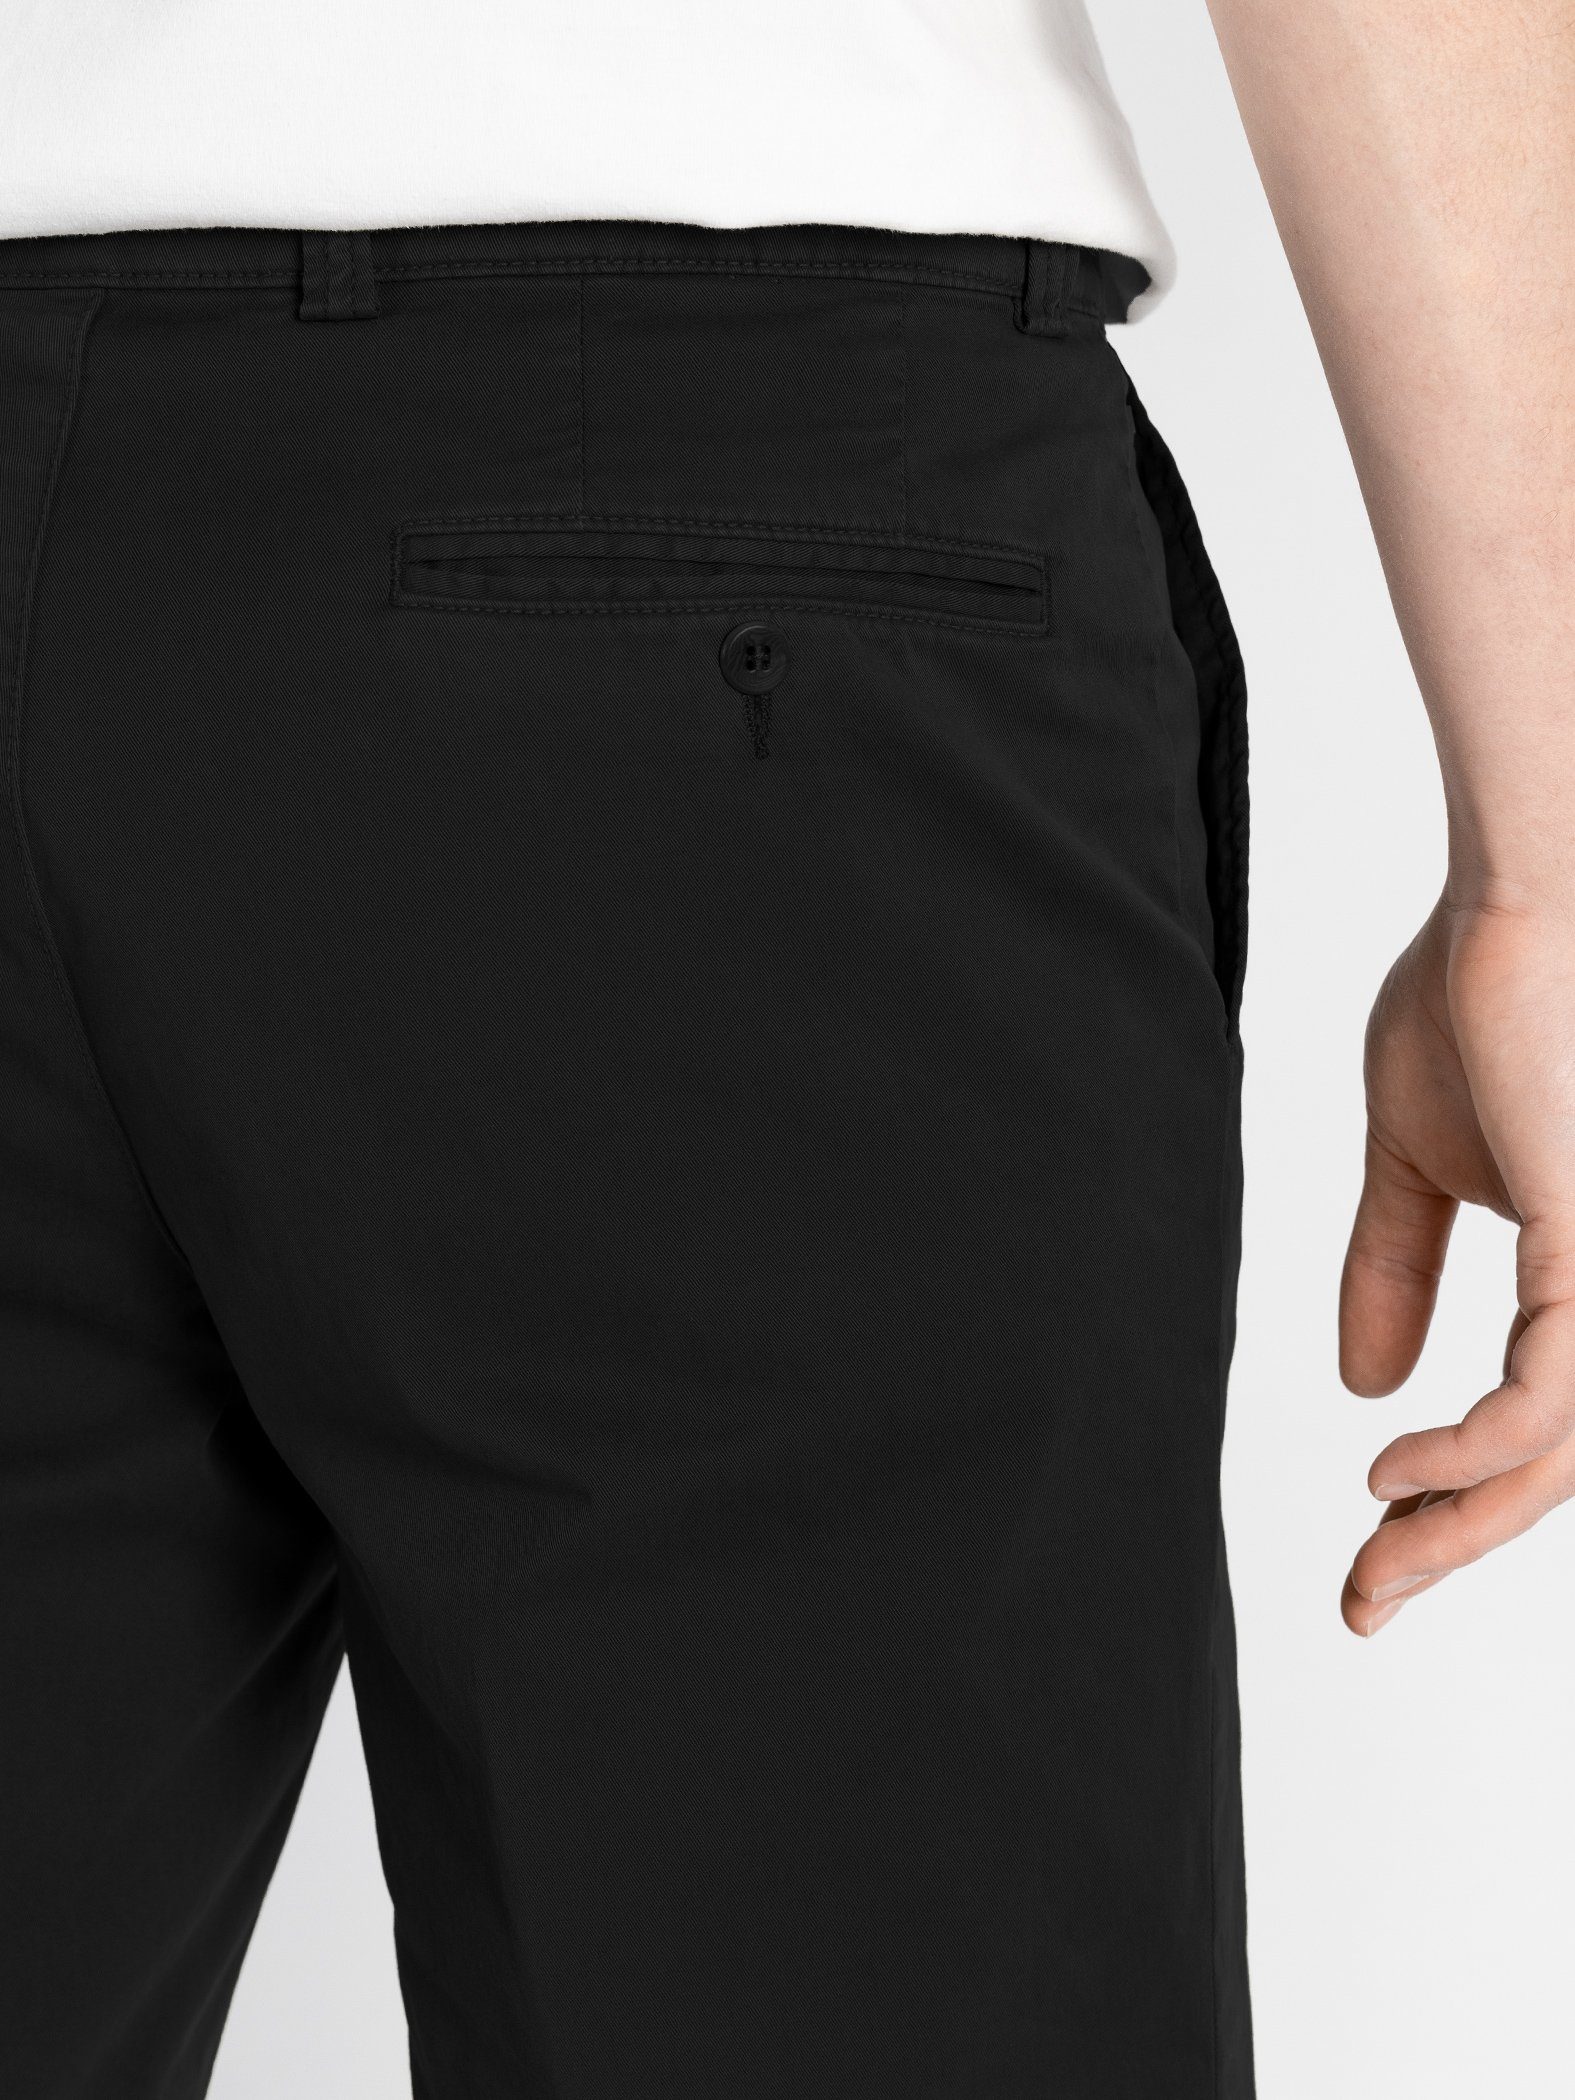 TwoMates Shorts Shorts mit elastischem Farbauswahl, Bund, Schwarz GOTS-zertifiziert